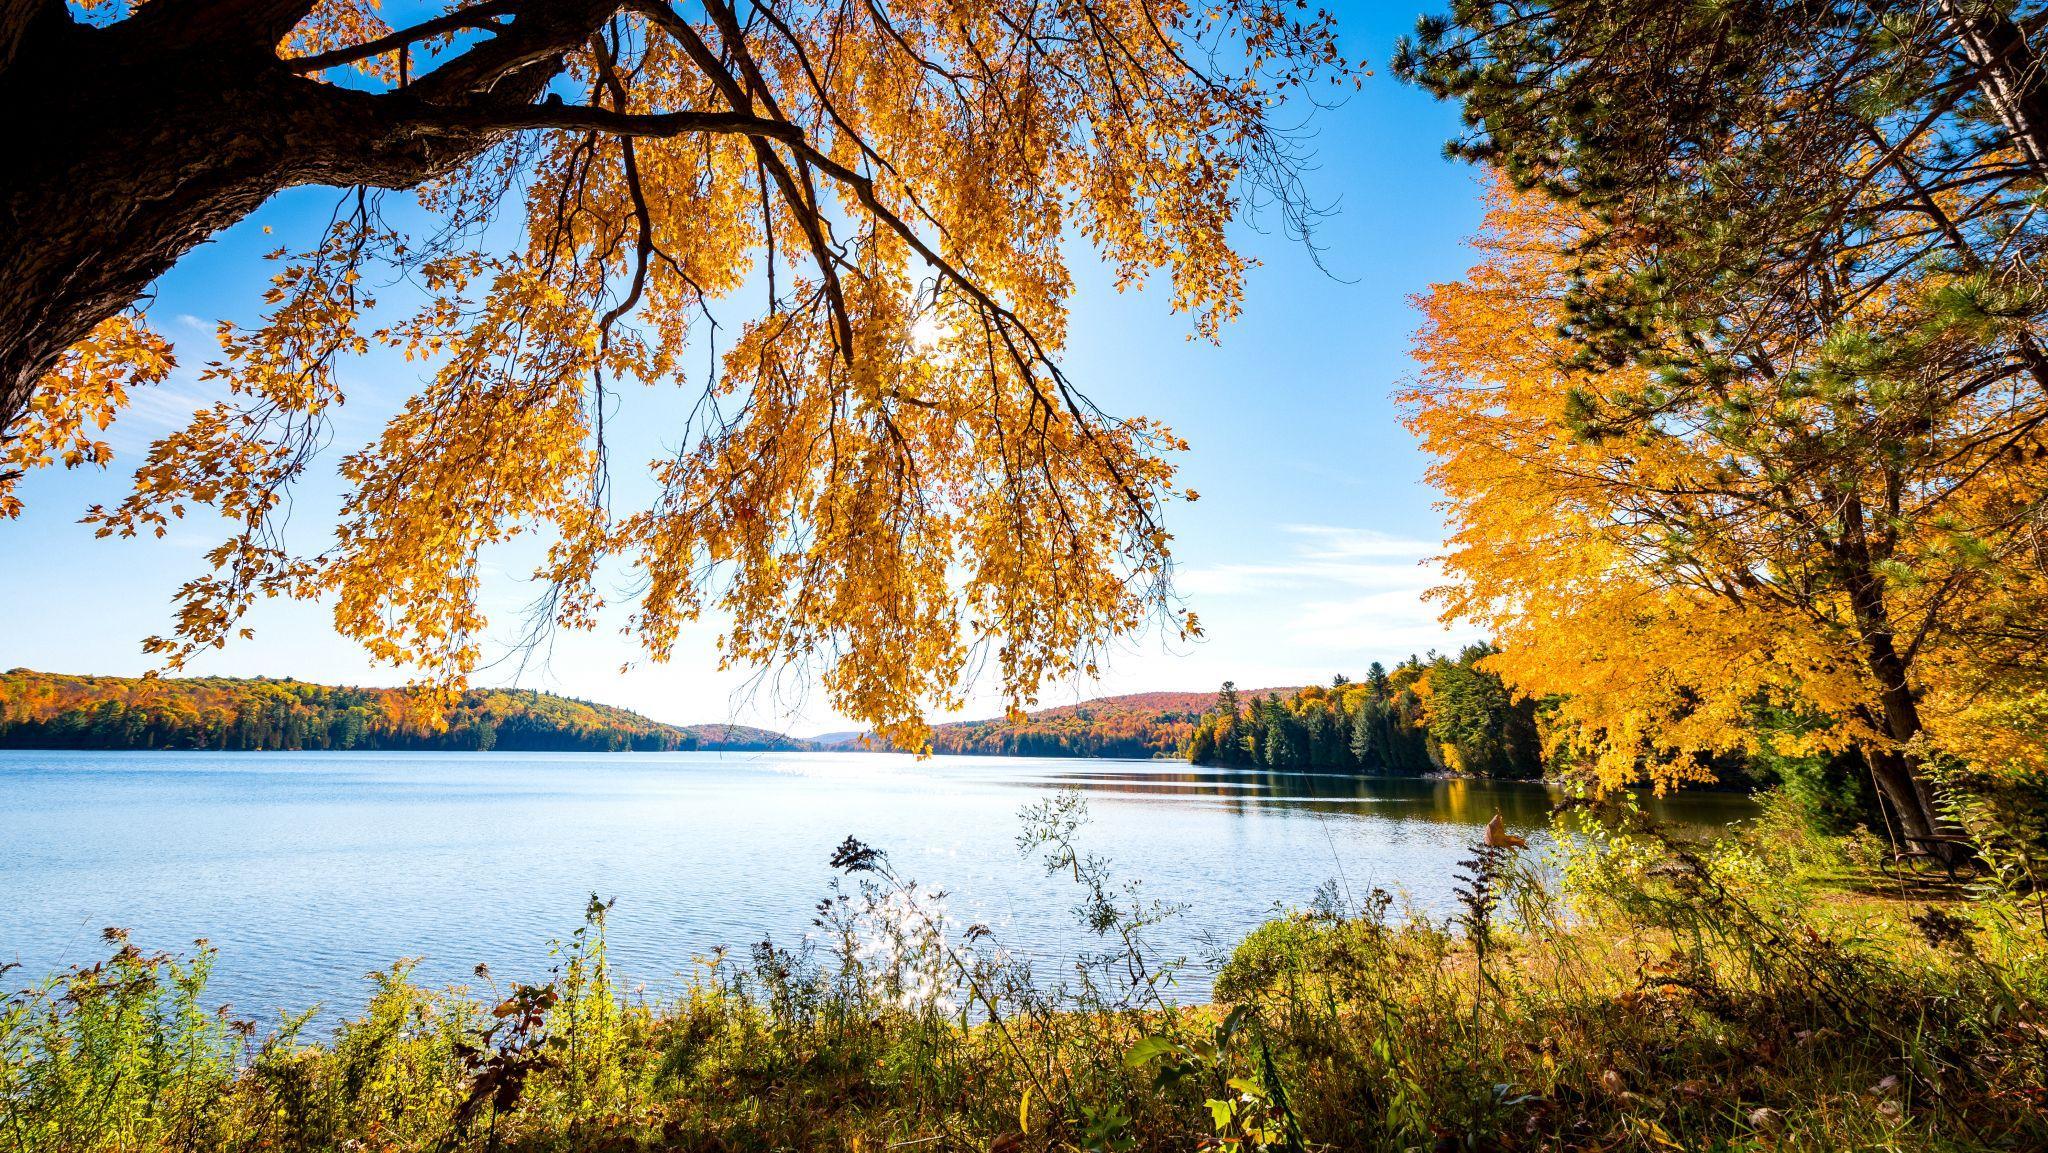 Le lac Philippe en automne avec des arbres au feuillage ocre et orangé en arrièreplan.